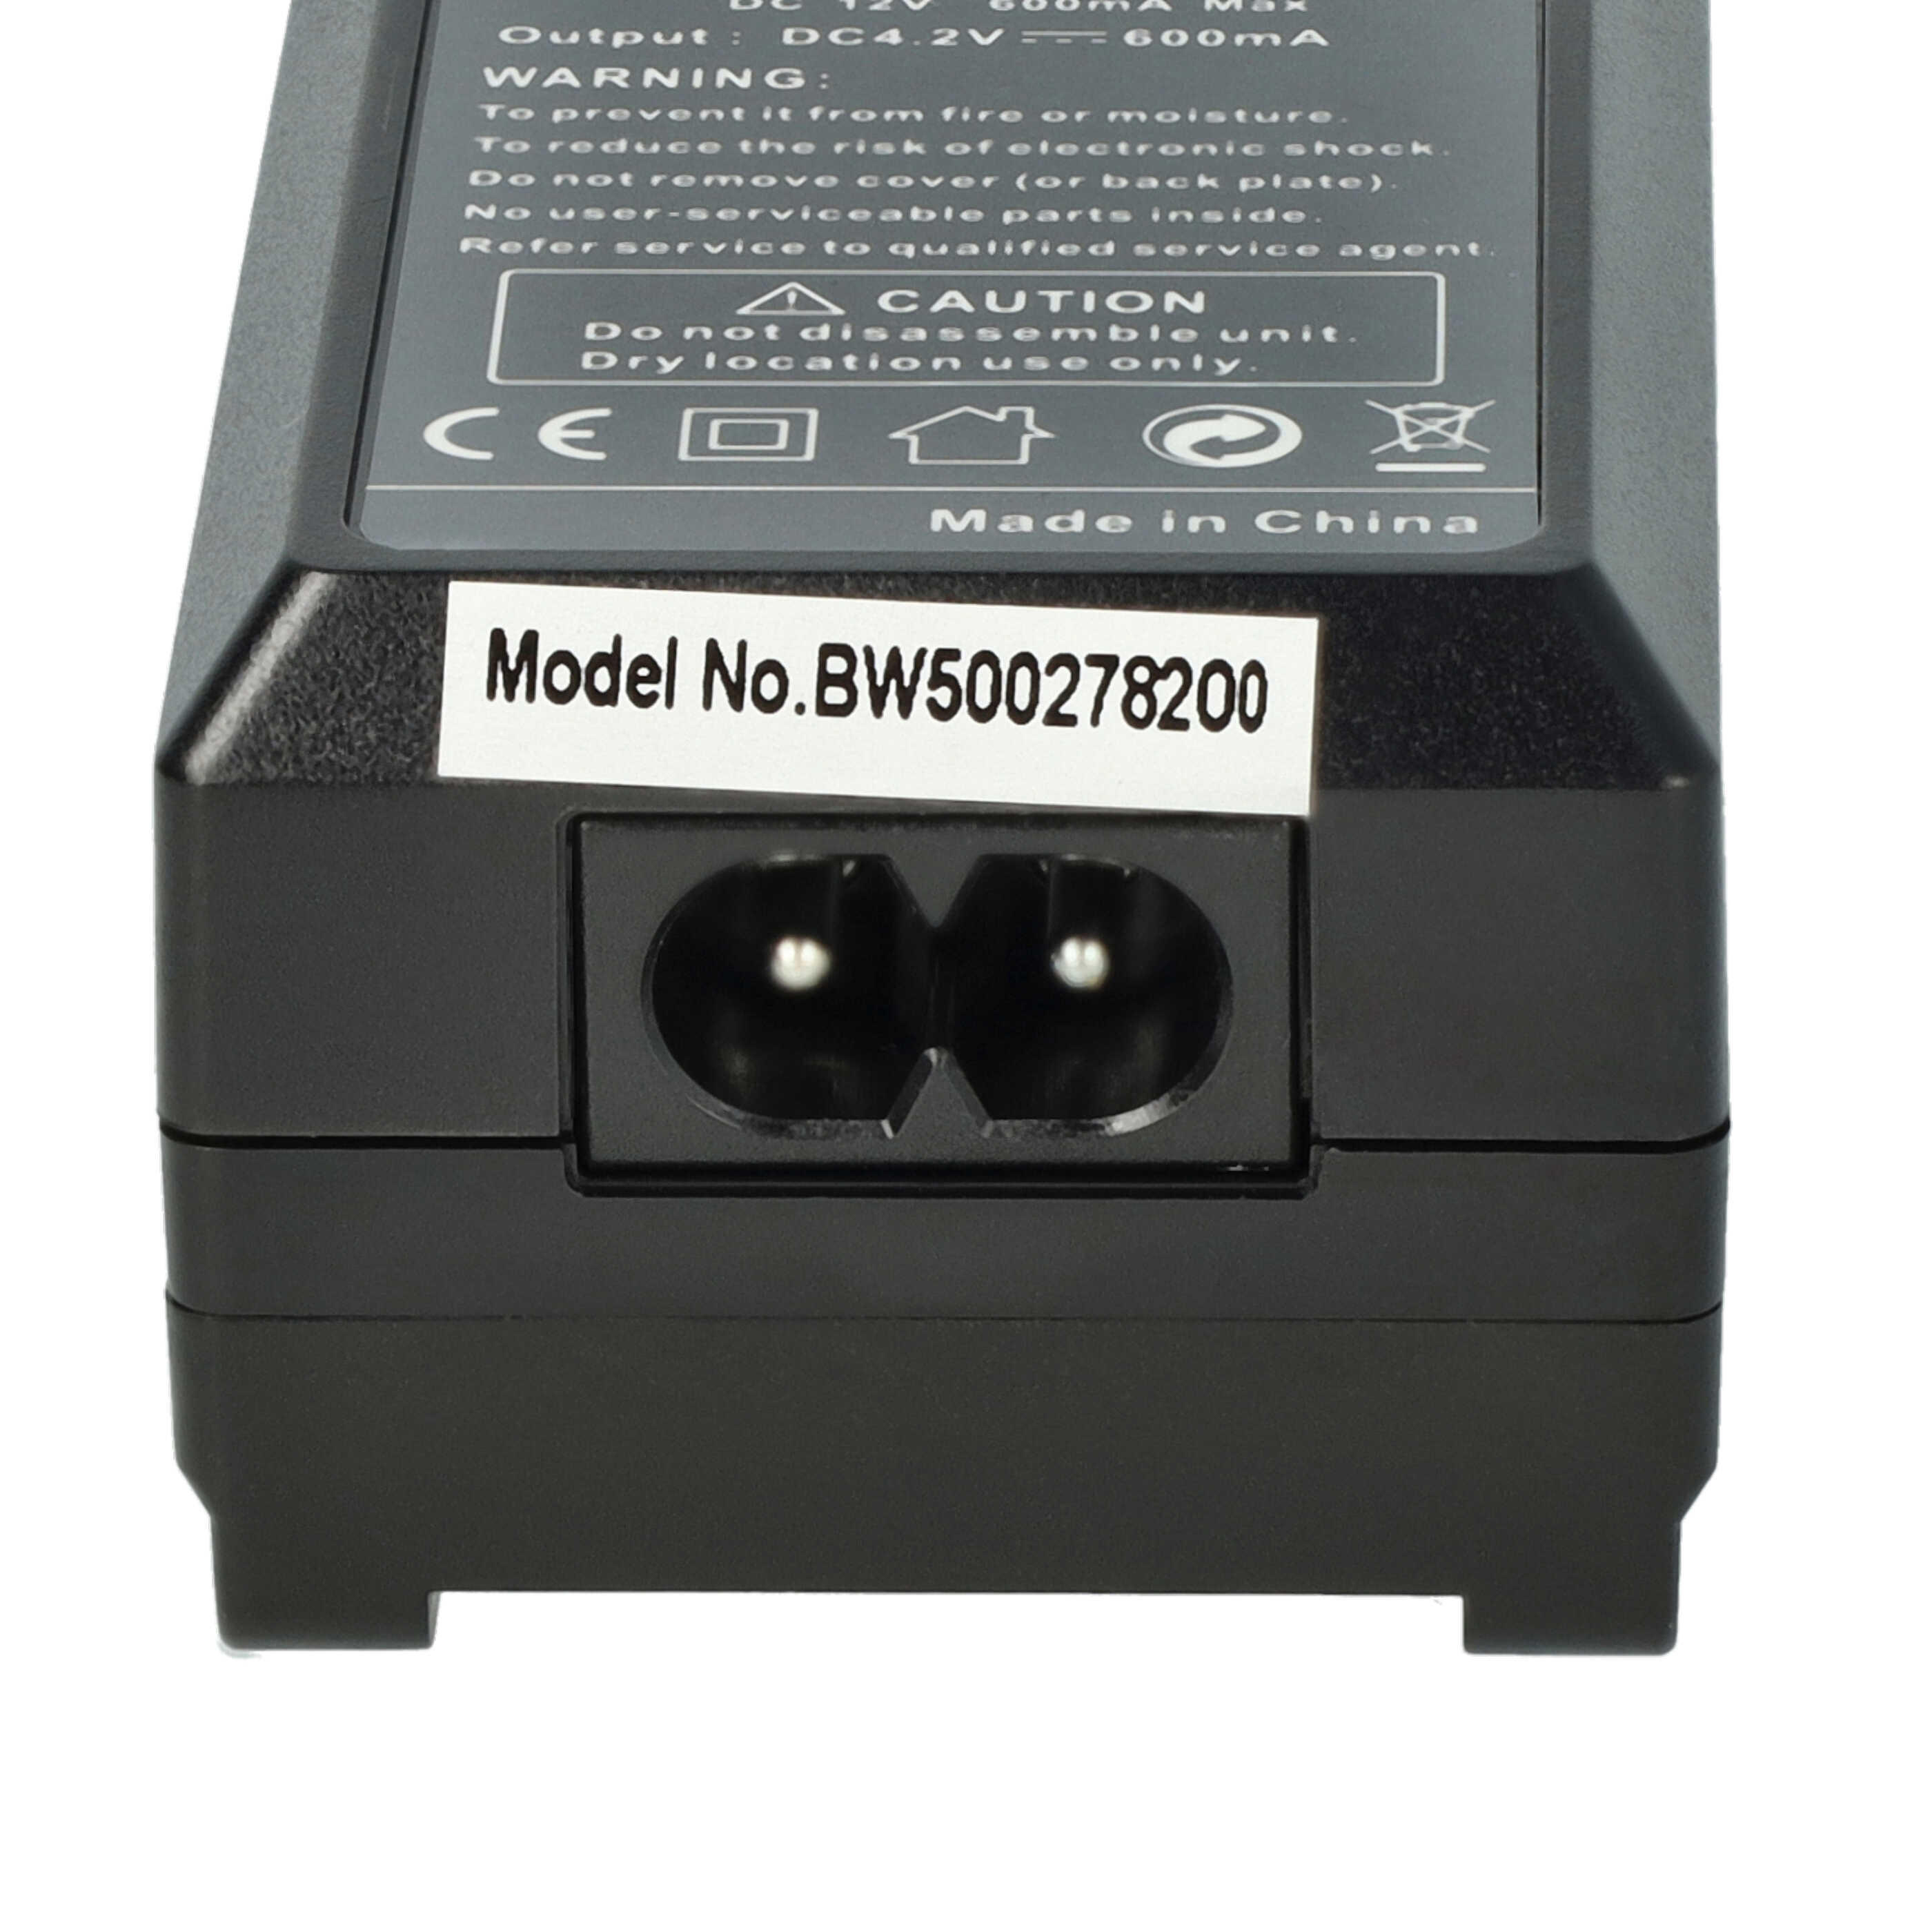 Ładowarka do aparatu Casio BC-81L i innych - ładowarka akumulatora 0,6 A, 4,2 V